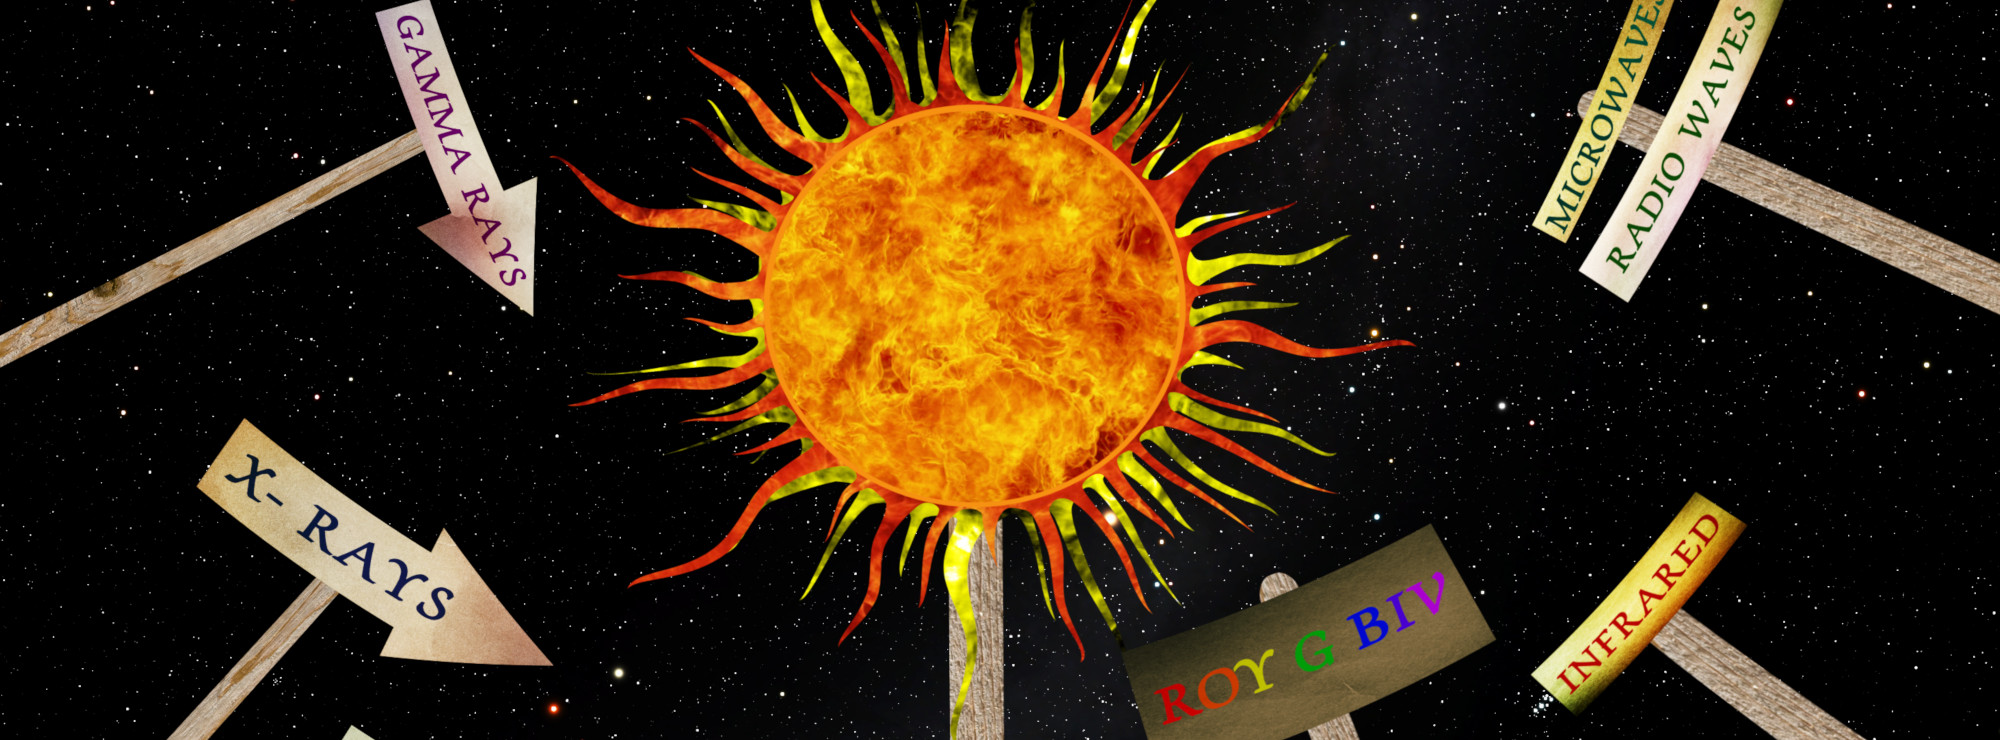 Vår närmaste stjärna: Solen. Bild: Michigan Science Center.